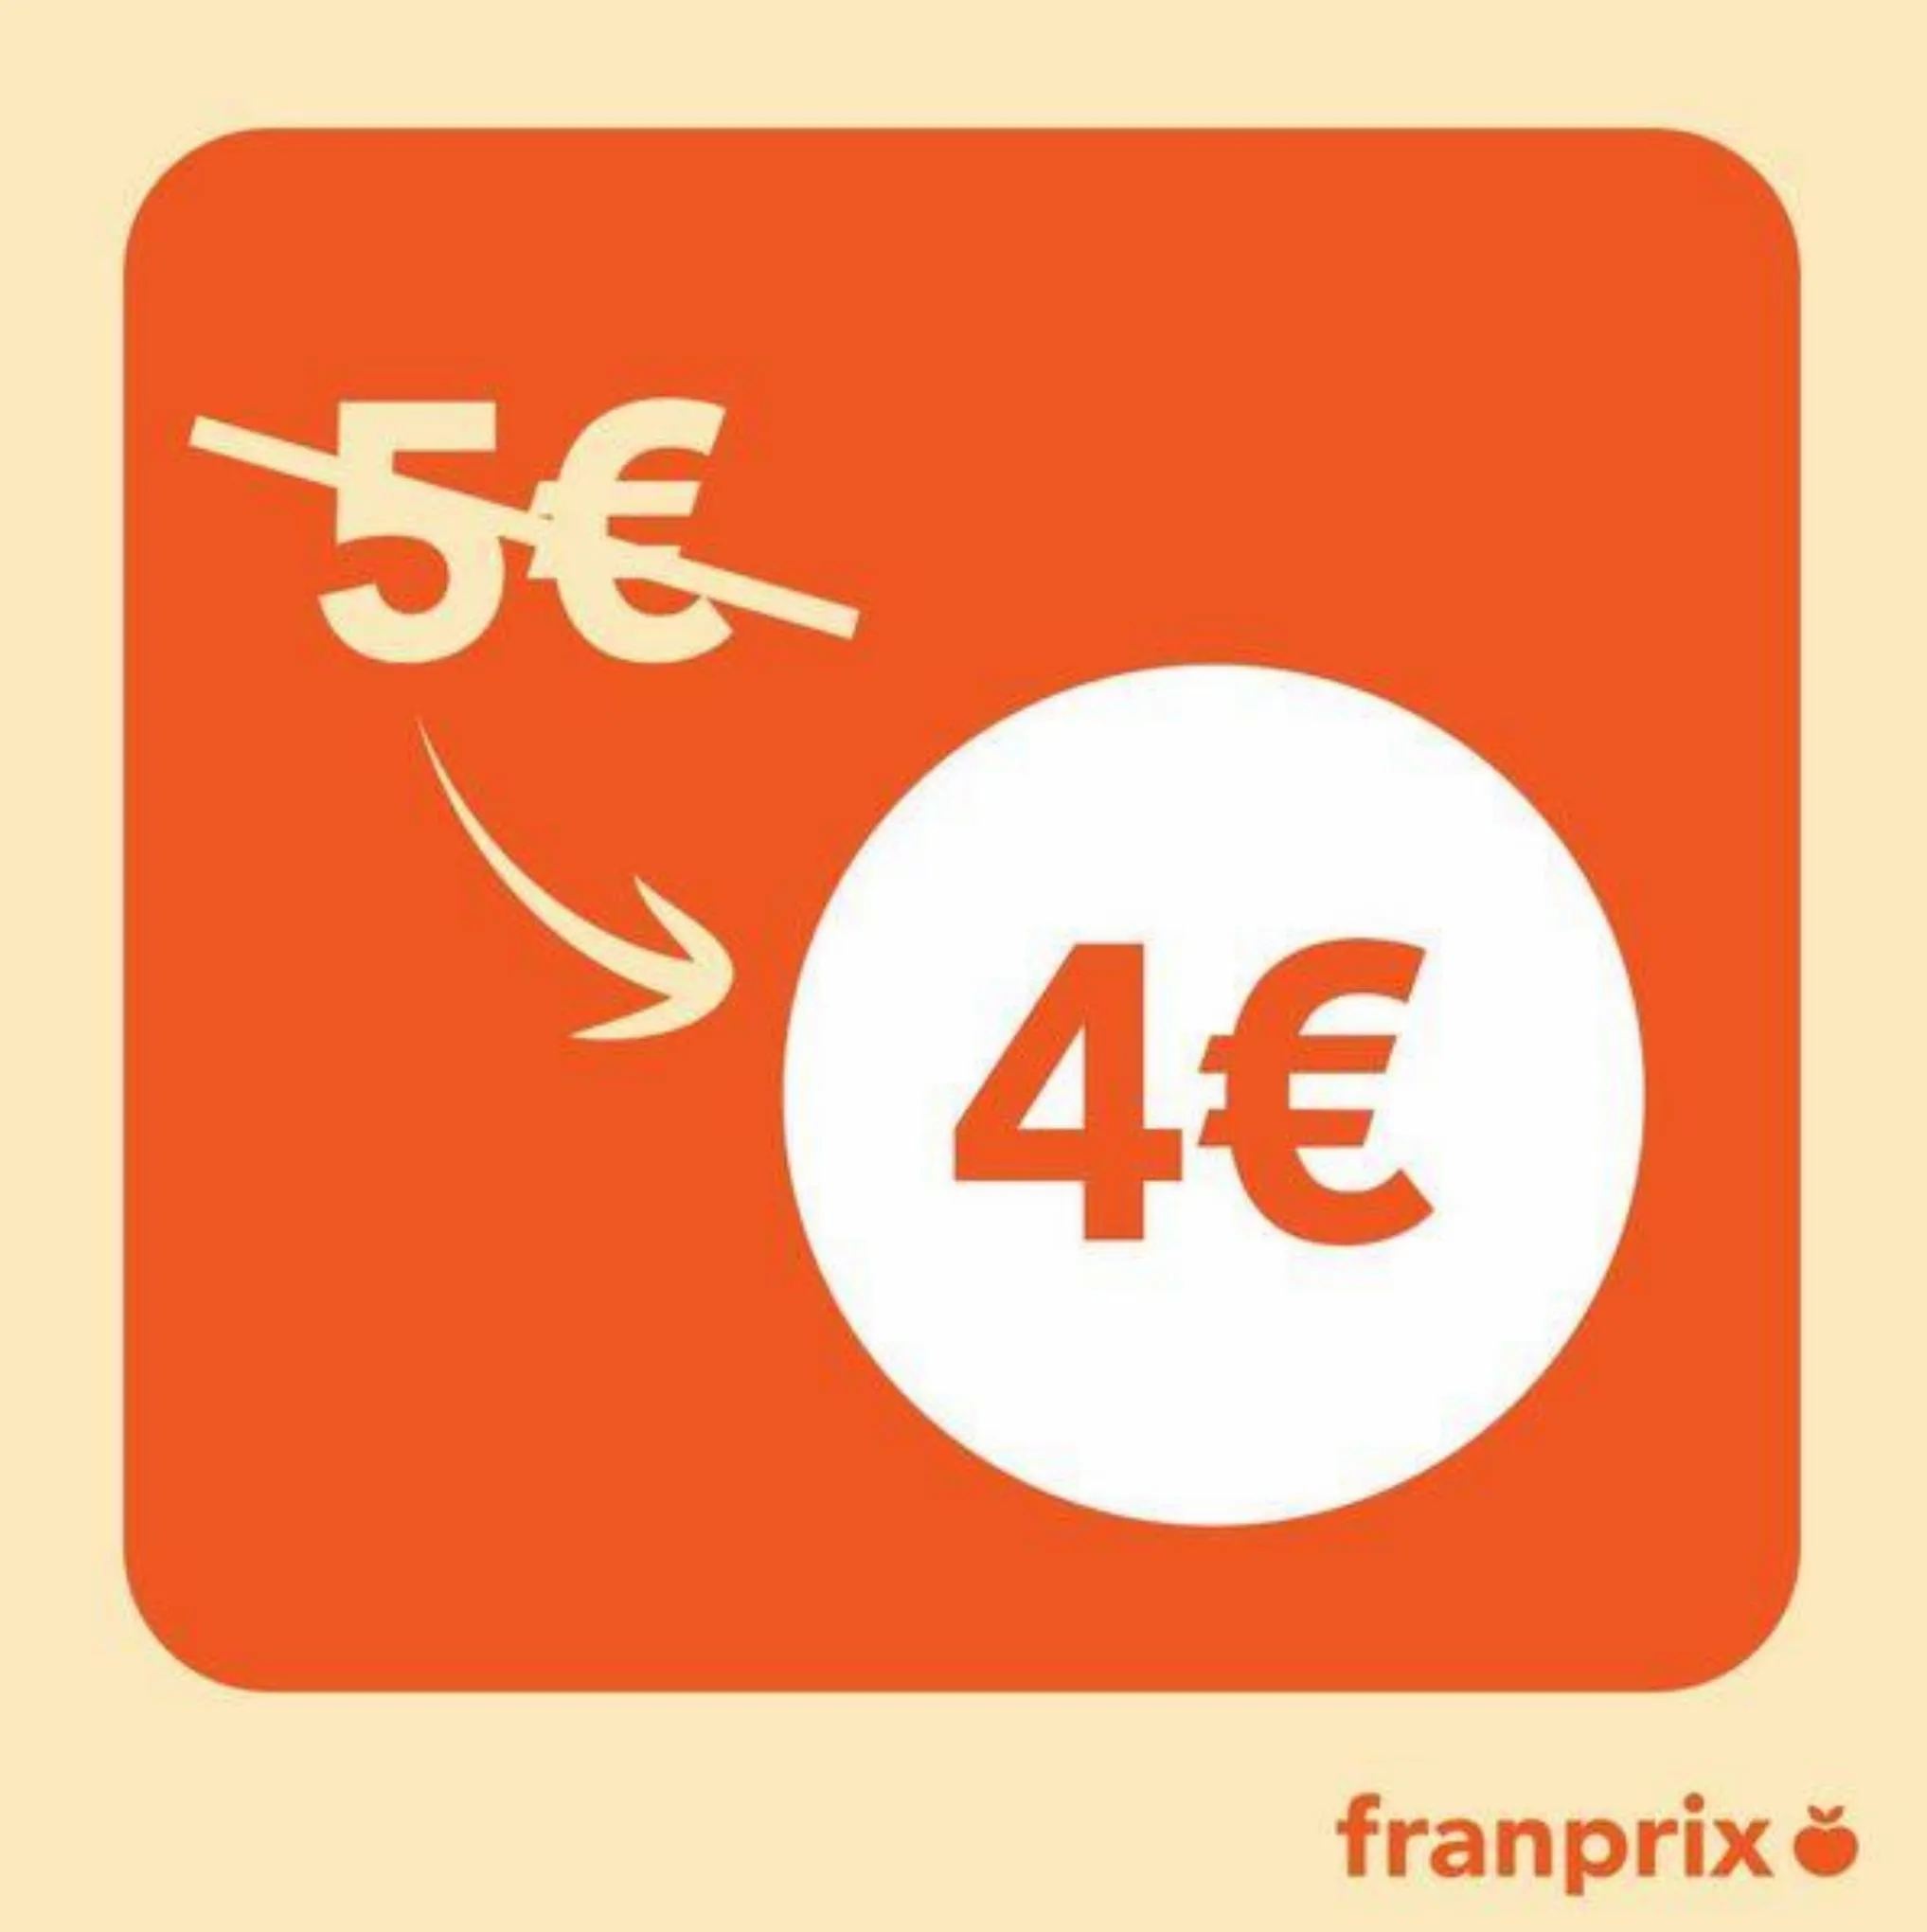 Catalogue Le panier franprix x Phenix passe de 5€ à 4€, page 00003